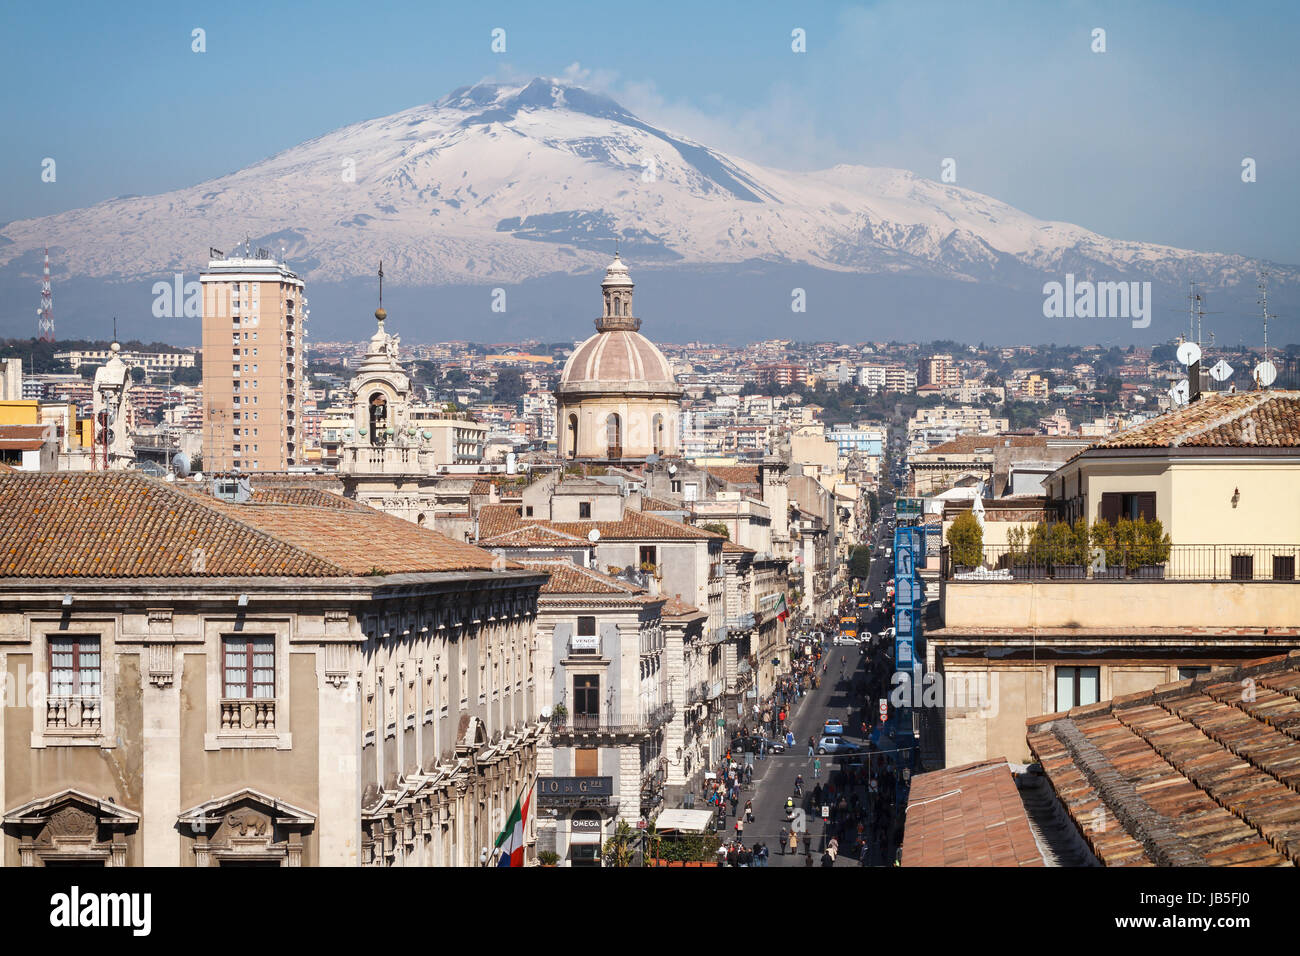 Catania, la centrale di 'Via Etnea' street con la coperta di neve il Monte Etna, Sicilia, Italia. Foto Stock